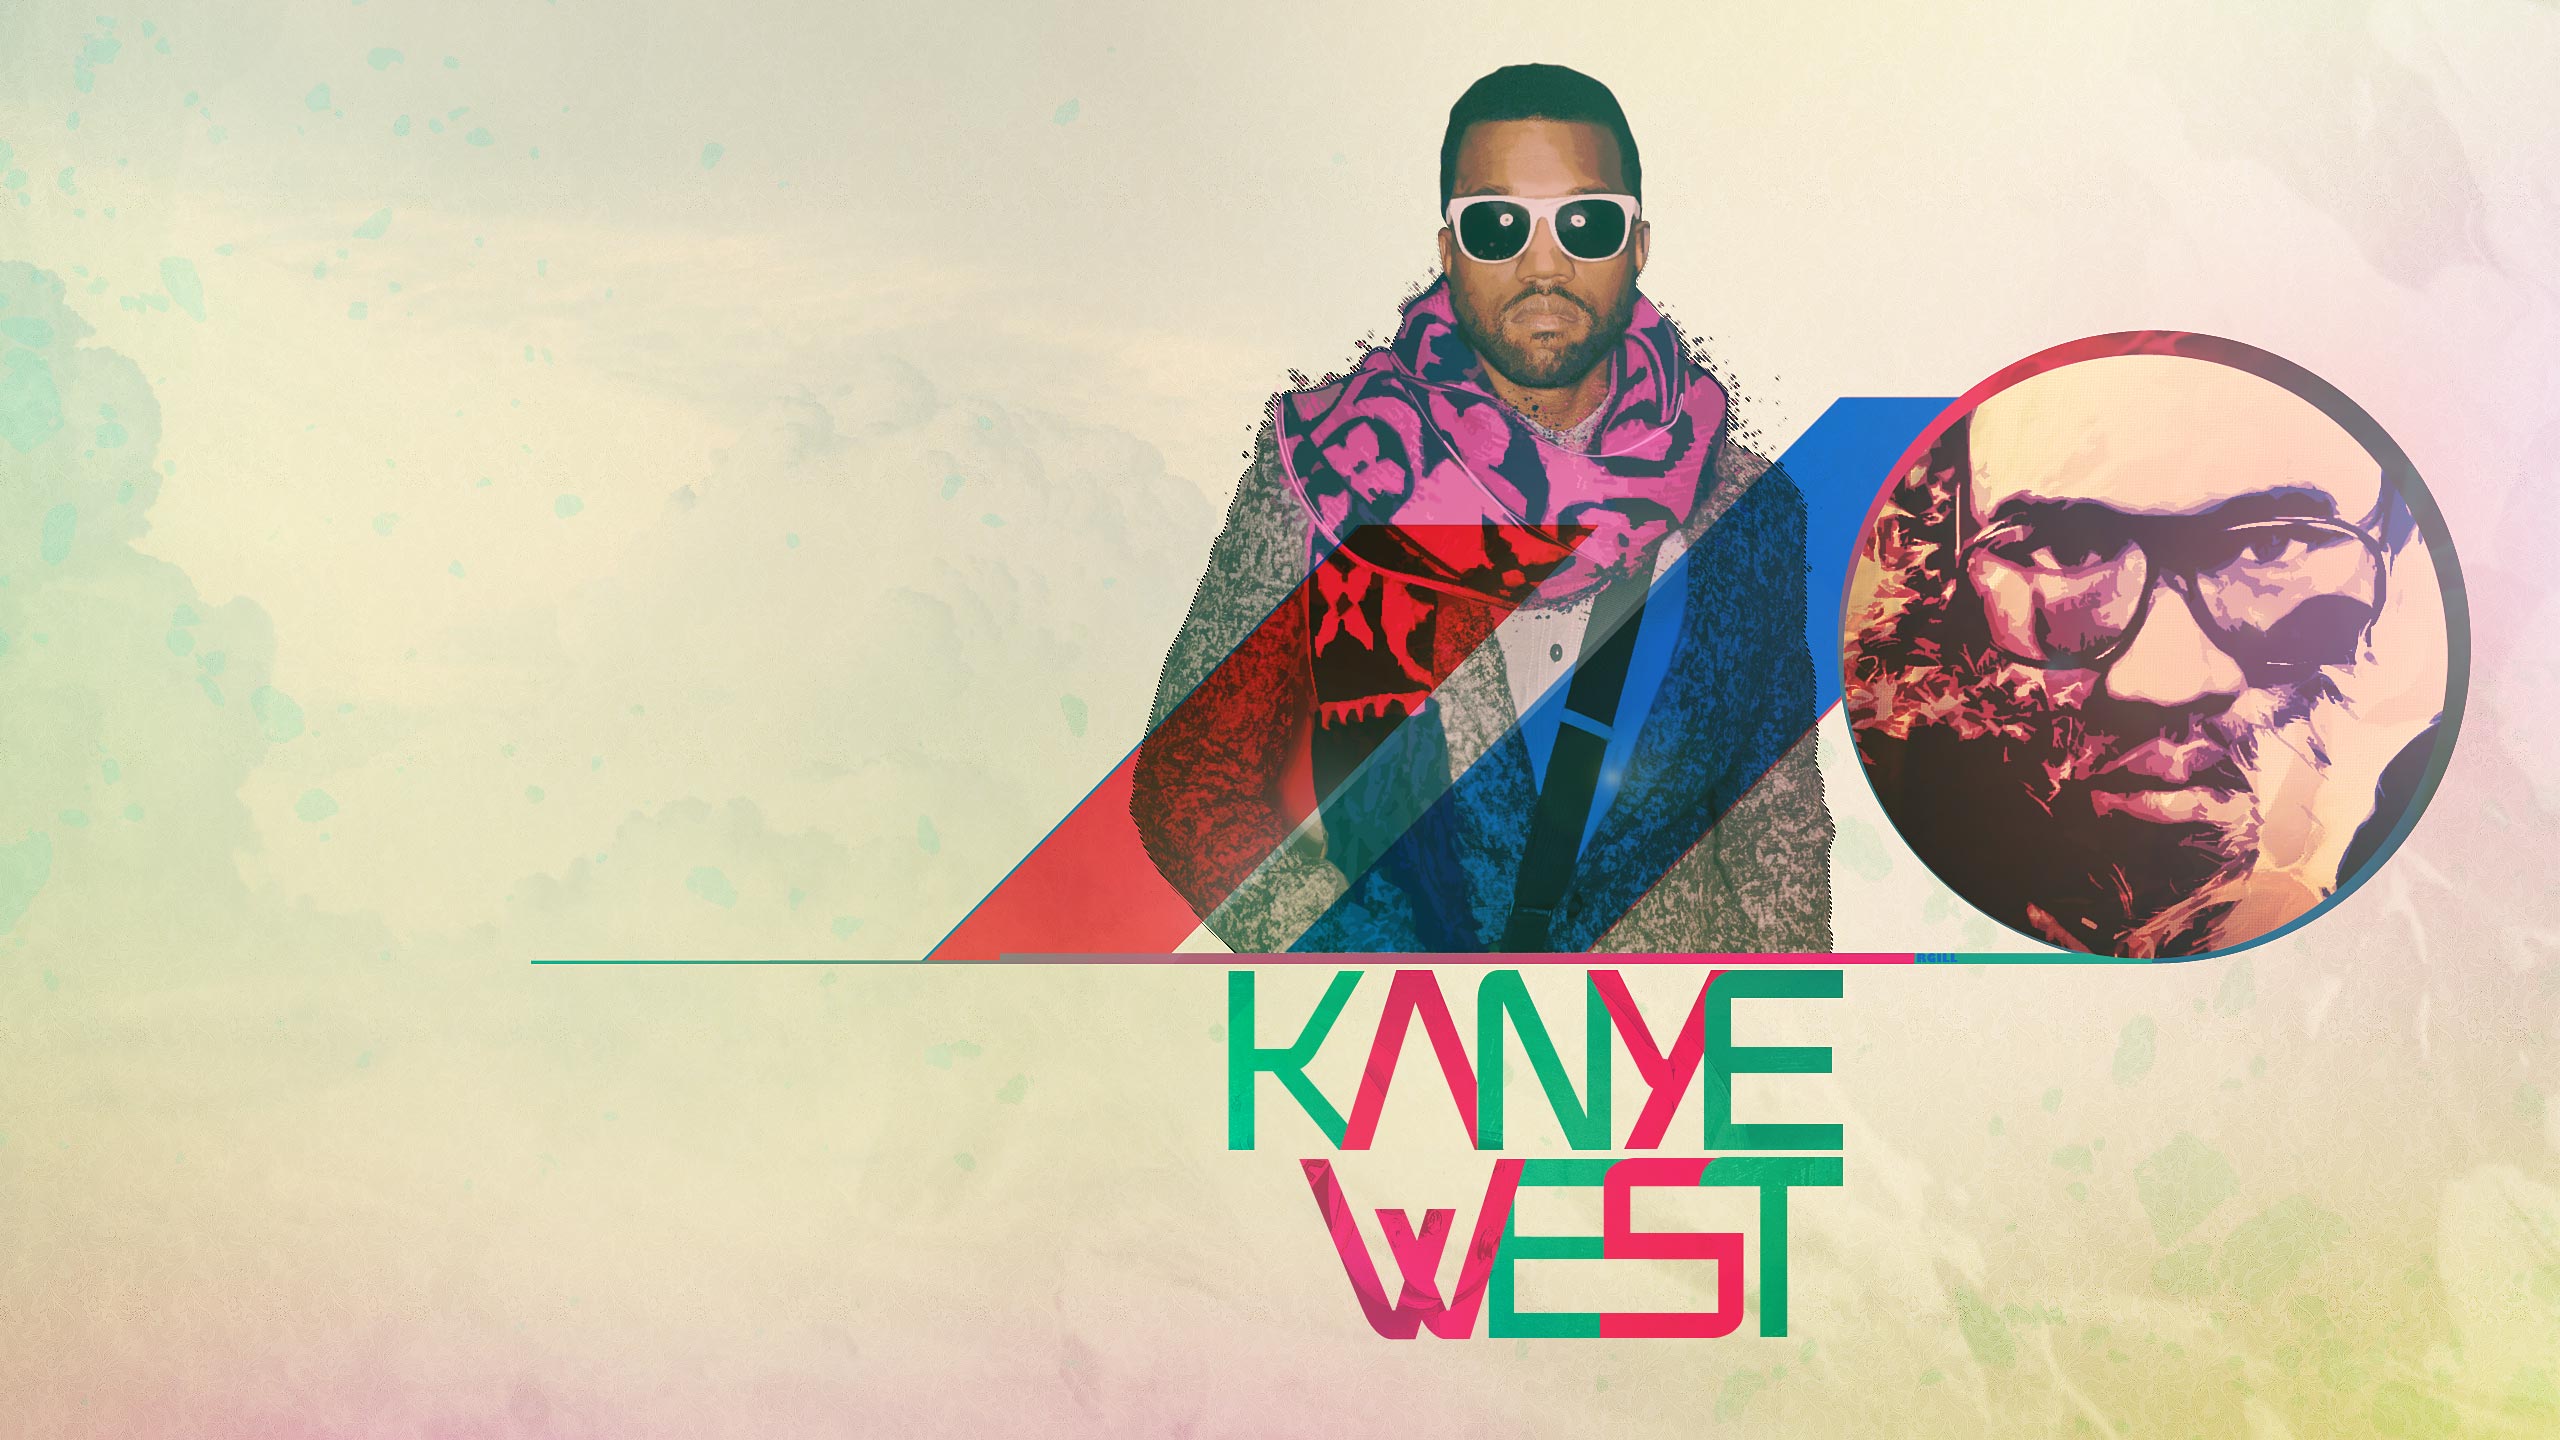 Fonds d'écran Kanye West : tous les wallpapers Kanye West